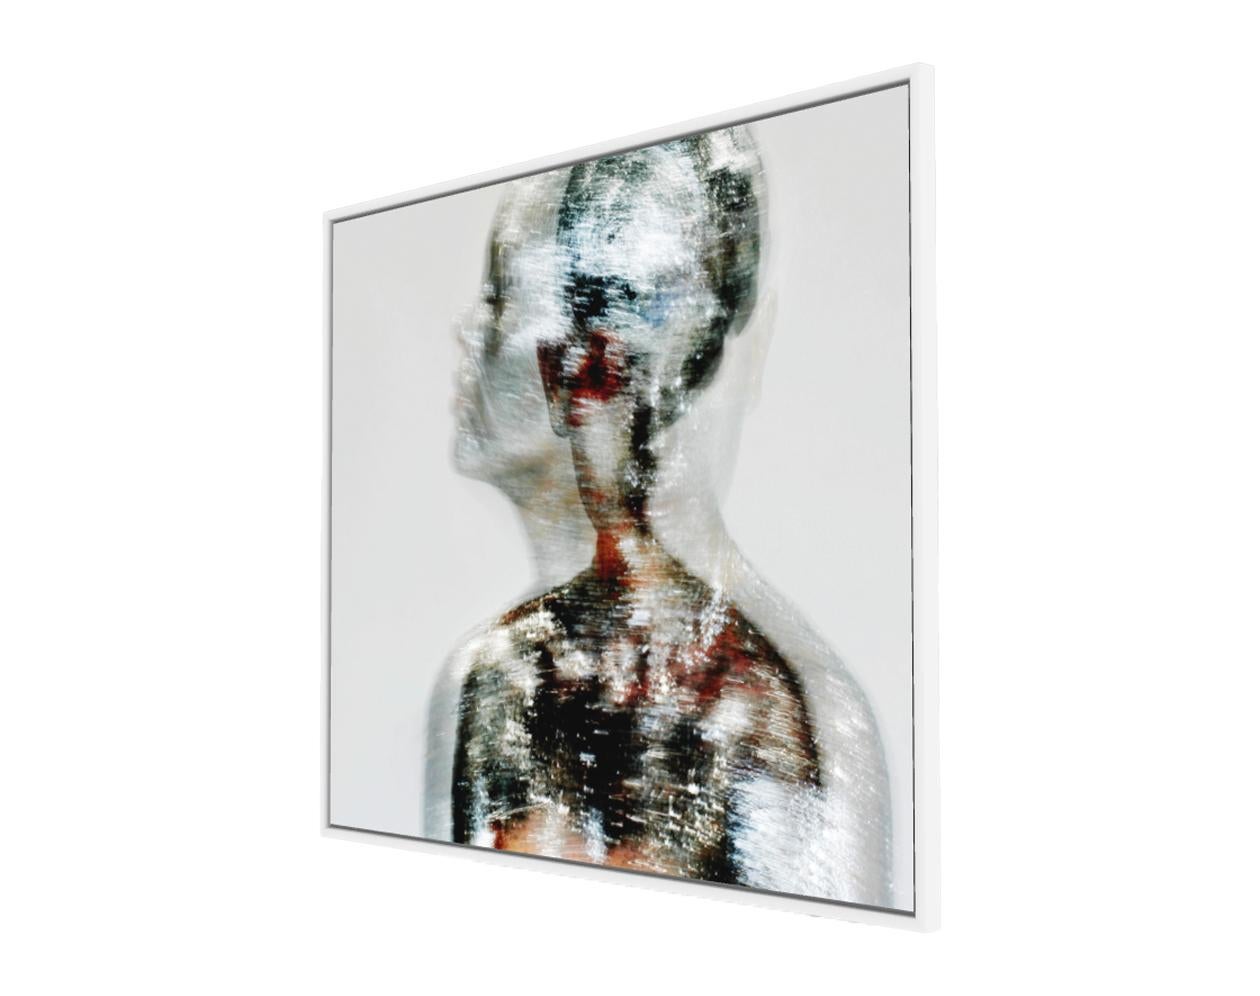 Human Alien – Abstrakt-expressionistische Kunstfotografie – Photograph von Roger Reist